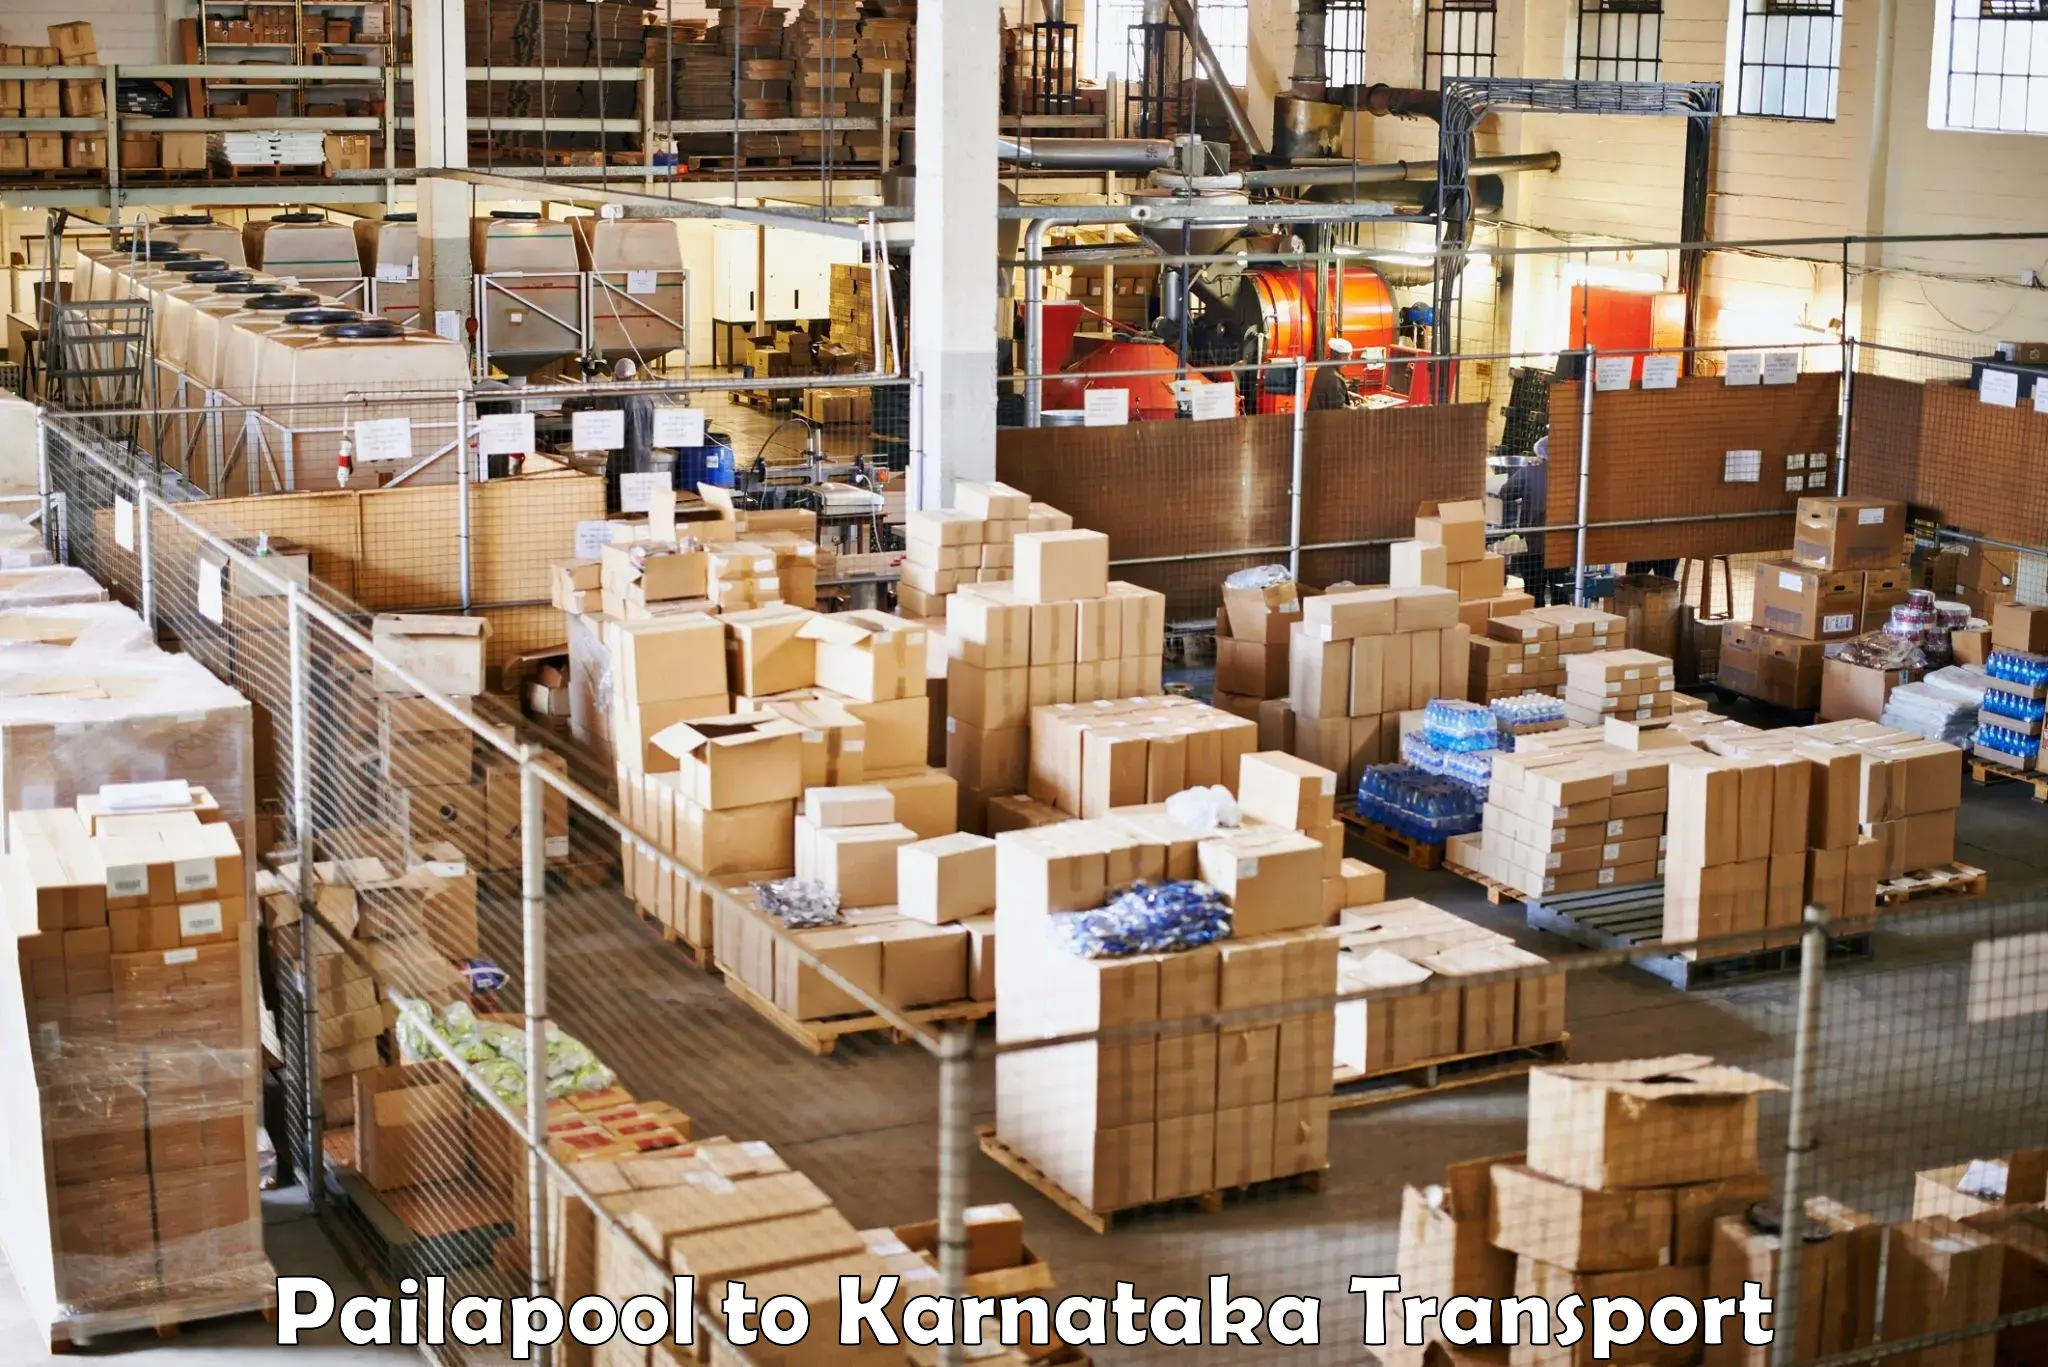 Daily transport service Pailapool to Basavakalyan